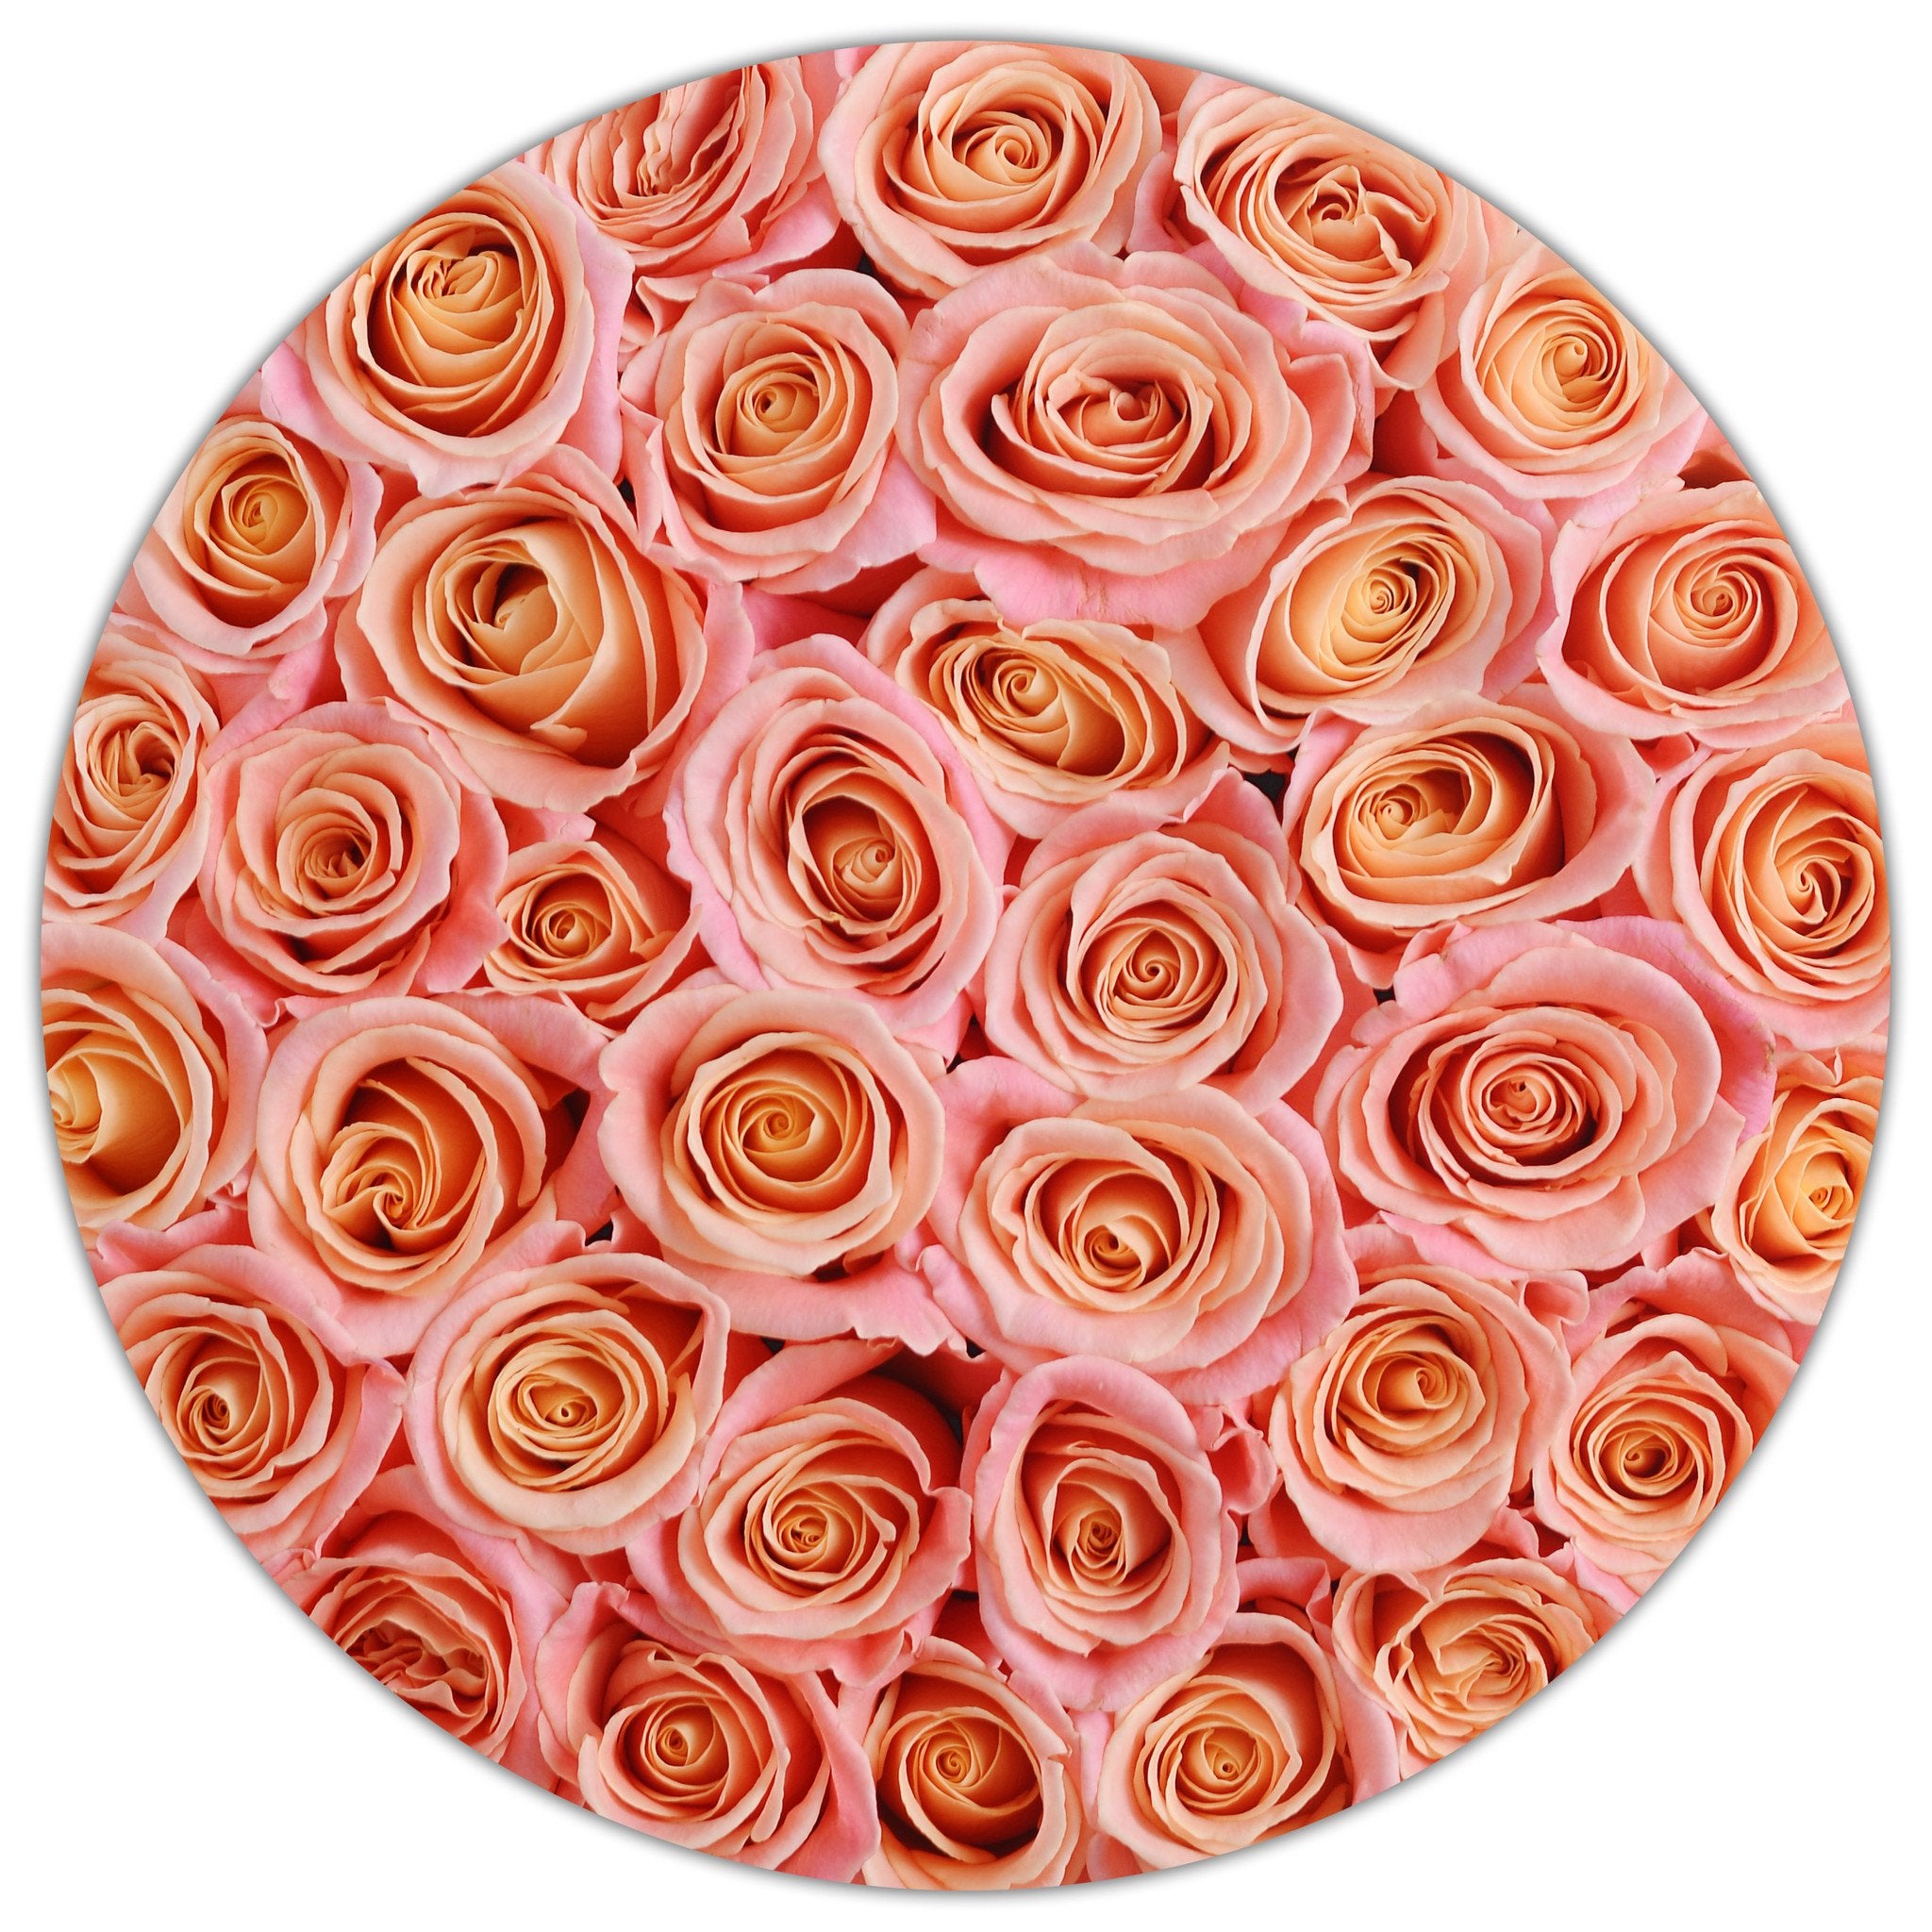 Aranjament floral cu trandafiri naturali somon in cutie medie